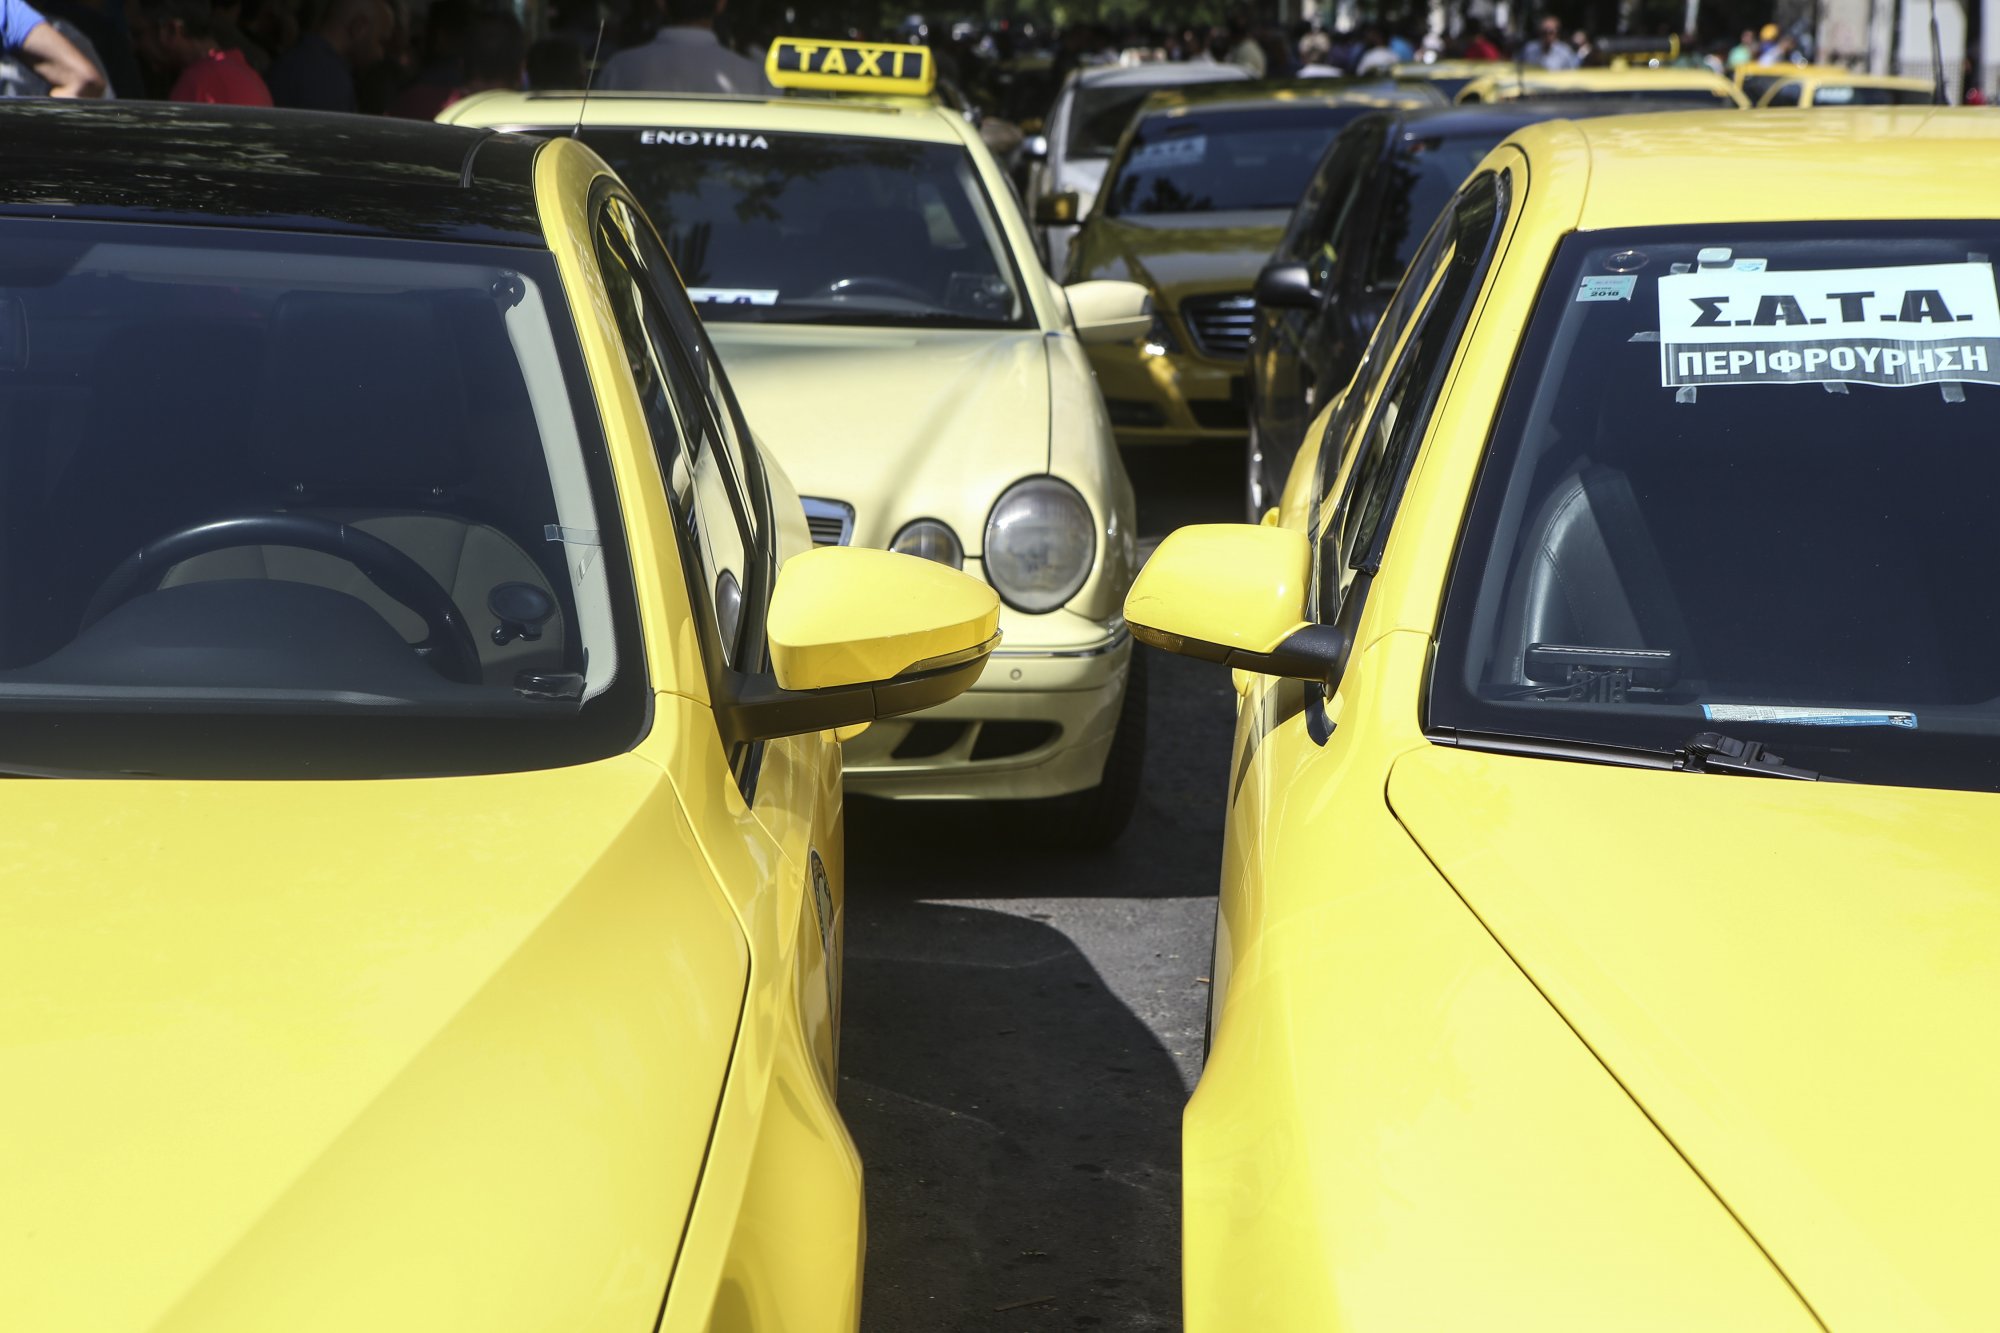 Ταξί: Πόσα μπορούν να αντικατασταθούν από μίνι – βαν